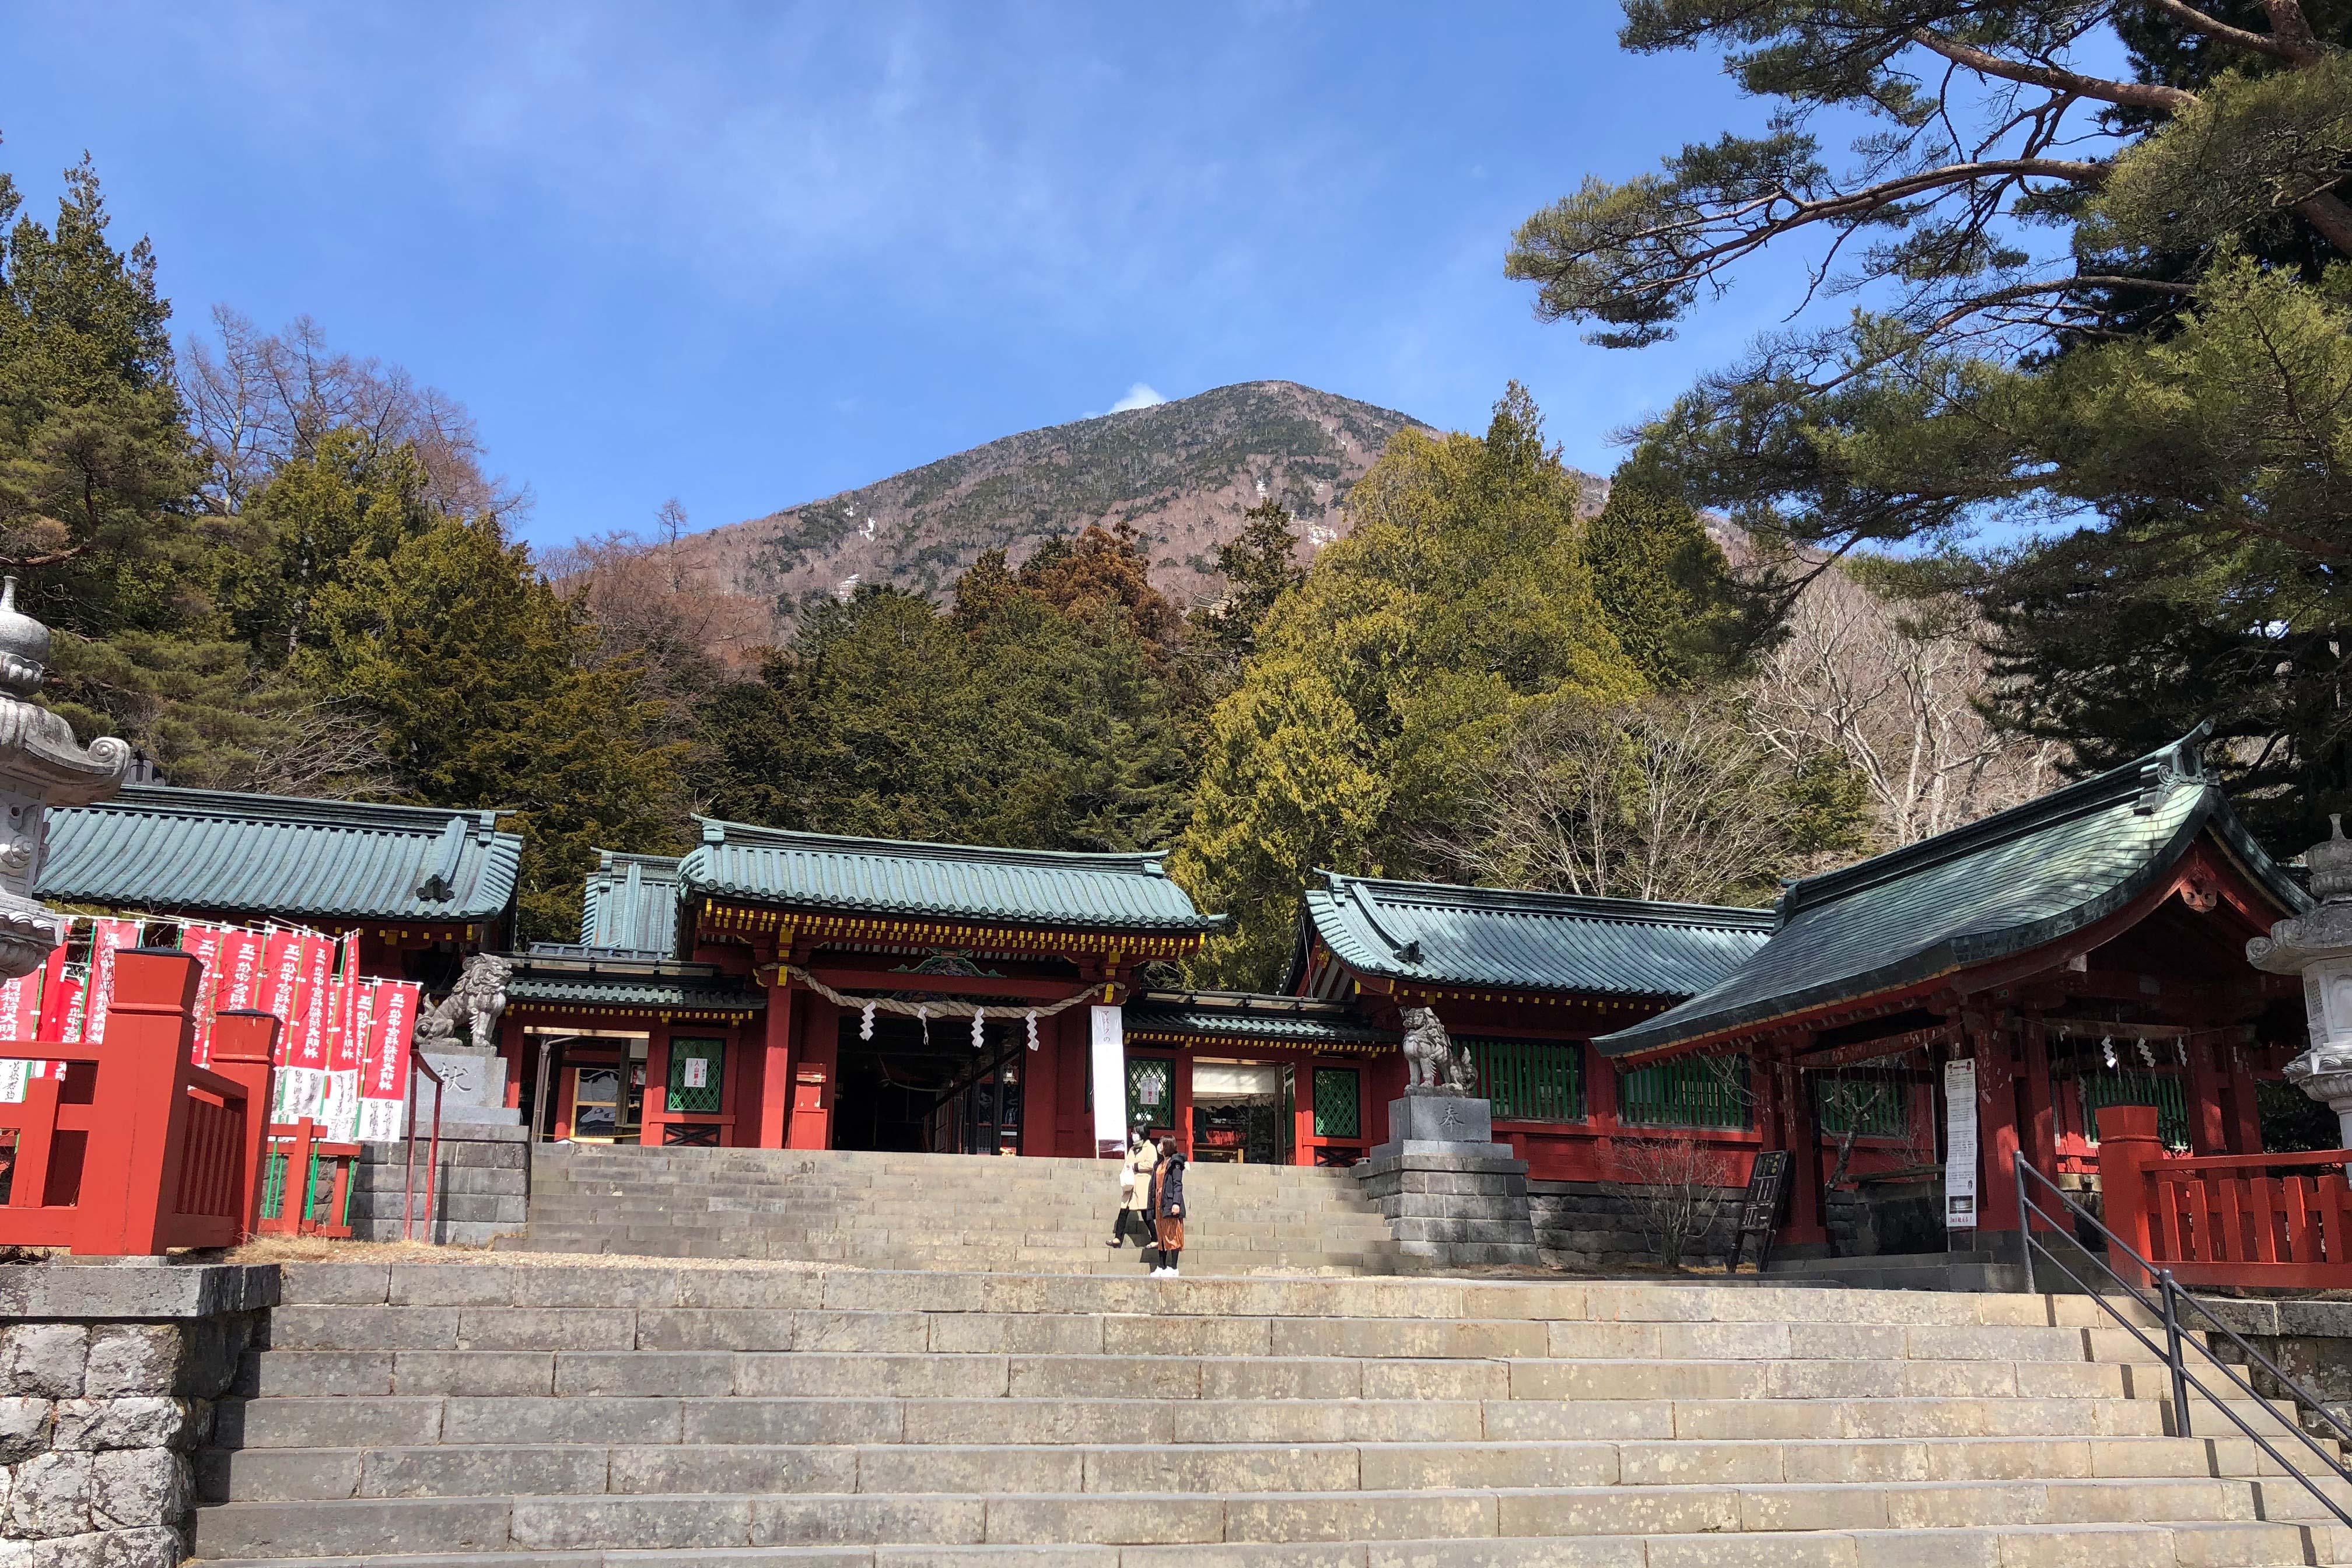 ศาลเจ้าจูกูชิเป็นส่วนหนึ่งของศาลเจ้านิกโกฟุตาระซัง แต่เดิม ศาลเจ้าฟุตาระซังถูกสร้างขึ้นบริเวณยอดเขานันไตโดยพระธุดงค์นามว่า โชโด โชนิน (ค.ศ. 735-817) ในปีค.ศ. 782 ภูเขานันไตมีชื่อเดิมว่าภูเขาฟุตาระ ซึ่งอ่านออกเสียงได้อีกอย่างว่า “นิโก” และค่อยๆ เพี้ยนมาเป็น “นิกโก” จนกลายมาเป็นชื่อเรียกบริเวณนิกโกในปัจจุบัน ศาลเจ้าฟุตาระซังครอบคลุมพื้นที่ 3,400 เฮกตาร์ในเมืองนิกโก ภายในประกอบด้วยศาลเจ้าจูกูชิซึ่งตั้งอยู่ริมทะเลสาบจูเซ็นจิ, ศาลเจ้าขนาดเล็กบนยอดเขานันไต, น้ำตกเคกอน, เส้นทางสายอิโรฮะ และเทือกเขาภายในอุทยานแห่งชาตินิกโก<br /> เจ้าแม่กวนอิมทาจิกิ (ไม้แกะสลัก) ในวัดจูเซ็นจิปัจจุบันเคยประดิษฐานอยู่ที่จูกูชิมาก่อน แต่ถูกย้ายข้ามฝั่งทะเลสาบไปหลังเกิดเหตุการณ์ดินถล่มในปีค.ศ. 1902<br /><br />สิ่งน่าสนใจภายในศาลเจ้าจูกูชิ<br /><br />วิหารคากุระ (คากุระเด็ง)<br />นักบวชหญิงจะแสดงคากุระหรือระบำศักดิ์สิทธิ์ทุกวันเพื่อบวงสรวงเทพนามว่า โอนะมุจิ โนะ มิโกโตะ ตามความเชื่อในศาสนาชินโต เทพองค์นี้มีอีกชื่อหนึ่งว่า “โอคุนิซามะ” ซึ่งได้ชื่อว่าเป็นเทพเจ้าแห่งโชคดีที่ชาวญี่ปุ่นคุ้นเคย <br /><br />วิหารสักการะและวิหารหลัก<br />สถาปัตยกรรมทั้งสองหลังสร้างขึ้นในปีค.ศ. 1701 และได้รับการขึ้นทะเบียนเป็นทรัพย์สินทางวัฒนธรรมแห่งชาติ วิหารหลักเป็นที่ประดิษฐานของเทพประจำศาลเจ้าฟุตาระซัง ในขณะที่วิหารสักการะใช้สำหรับประกอบพิธีกรรมทางศาสนา<br /><br />เทพเจ้าทั้งเจ็ด<br />นอกจากเทพ โอนะมุจิ โนะ มิโกโตะ (โอคุนิซามะ) ซึ่งเป็นเทพองค์หลักของศาลเจ้าจูกูชิแล้ว ภายในศาลเจ้ายังเป็นที่ประดิษฐานของเทพเจ้าทั้งเจ็ดด้วย <br /><br />ทางขึ้นเขานันไต<br />เส้นทางสู่ยอดเขานันไตเริ่มต้นจากบริเวณด้านหน้าวิหารหลัก ระยะทางประมาณ 6 กม. และเปิดให้ใช้งานระหว่างวันที่ 25 เมษายน – 11 พฤศจิกายนของทุกปี<br /><br />พิพิธภัณฑ์ศาลเจ้าฟุตาระซัง<br />พิพิธภัณฑ์ศาลเจ้าฟุตาระซังเก็บรวบรวมดาบเอาไว้มากมาย รวมทั้งดาบซามูไรที่ยาวที่สุดในประเทศญี่ปุ่นชื่อ “เนเนกิริมารุ (ทรัพย์สินทางวัฒนธรรมแห่งชาติ)” นอกจากนี้ ยังจัดแสดง มิโคชิ หรือเกี้ยวสำหรับแห่ในงานเทศกาลซึ่งมีอายุเก่าแก่ตั้งแต่ศตวรรษที่ 14 และวัตถุดิบต่างๆ ที่ขุดพบจากยอดเขานันไต (ทรัพย์สินทางวัฒนธรรมแห่งชาติ)  <br /><br />ศาลเจ้าจูกูชิอินาริ <br />ภายในเขตศาลเจ้าจูกูชิเป็นที่ตั้งของศาลเจ้าอินาริ ซึ่งเป็นที่ประดิษฐานของเทพ อุคะโนะมิทามะ โนะ คามิ เทพแห่งการเพาะปลูก และเชื่อกันว่าเทพองค์เดียวกันนี้ช่วยให้ประสบความสำเร็จในธุรกิจด้วย 